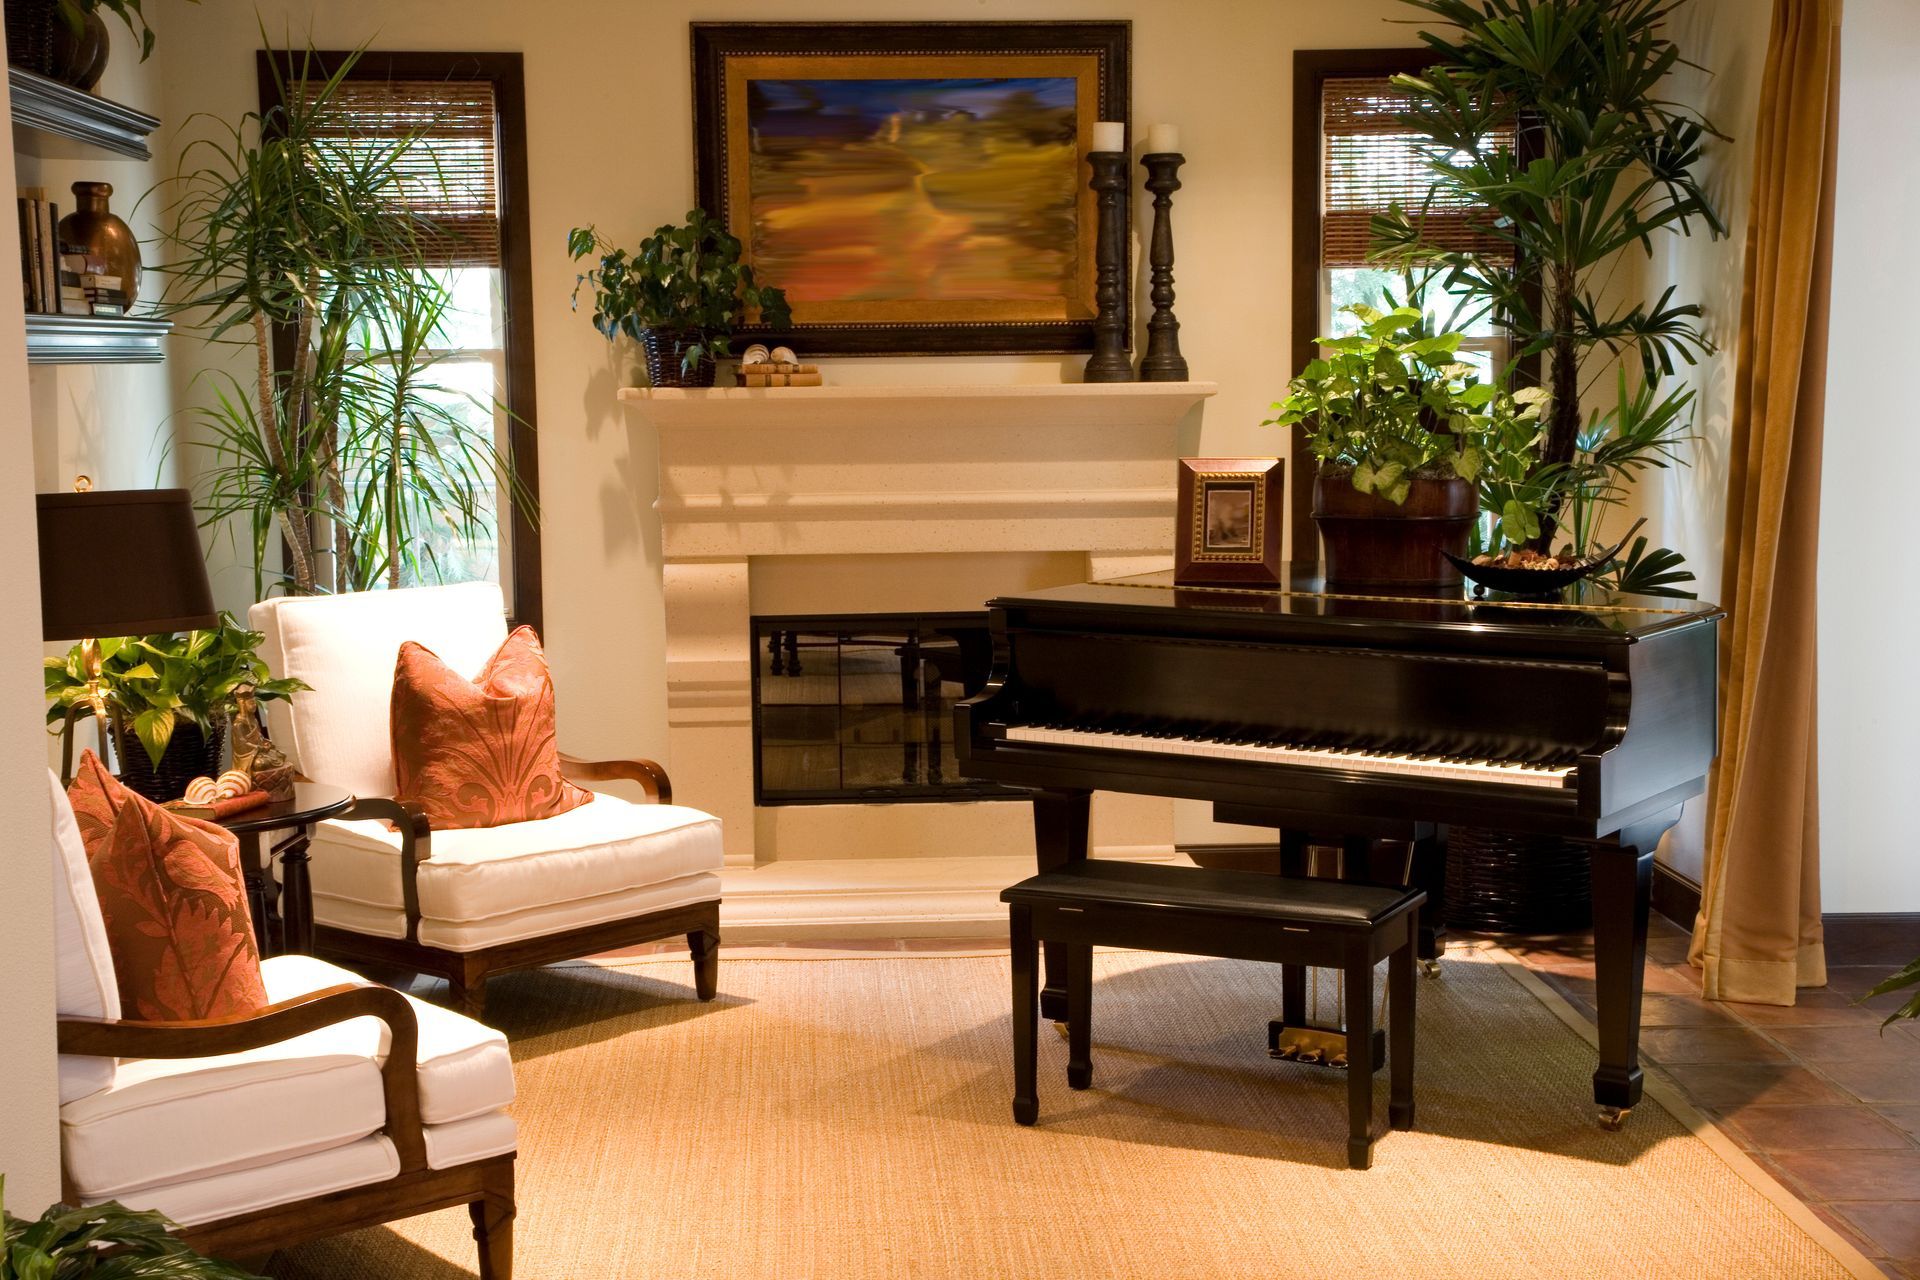 Un piano dans un salon avec des plantes